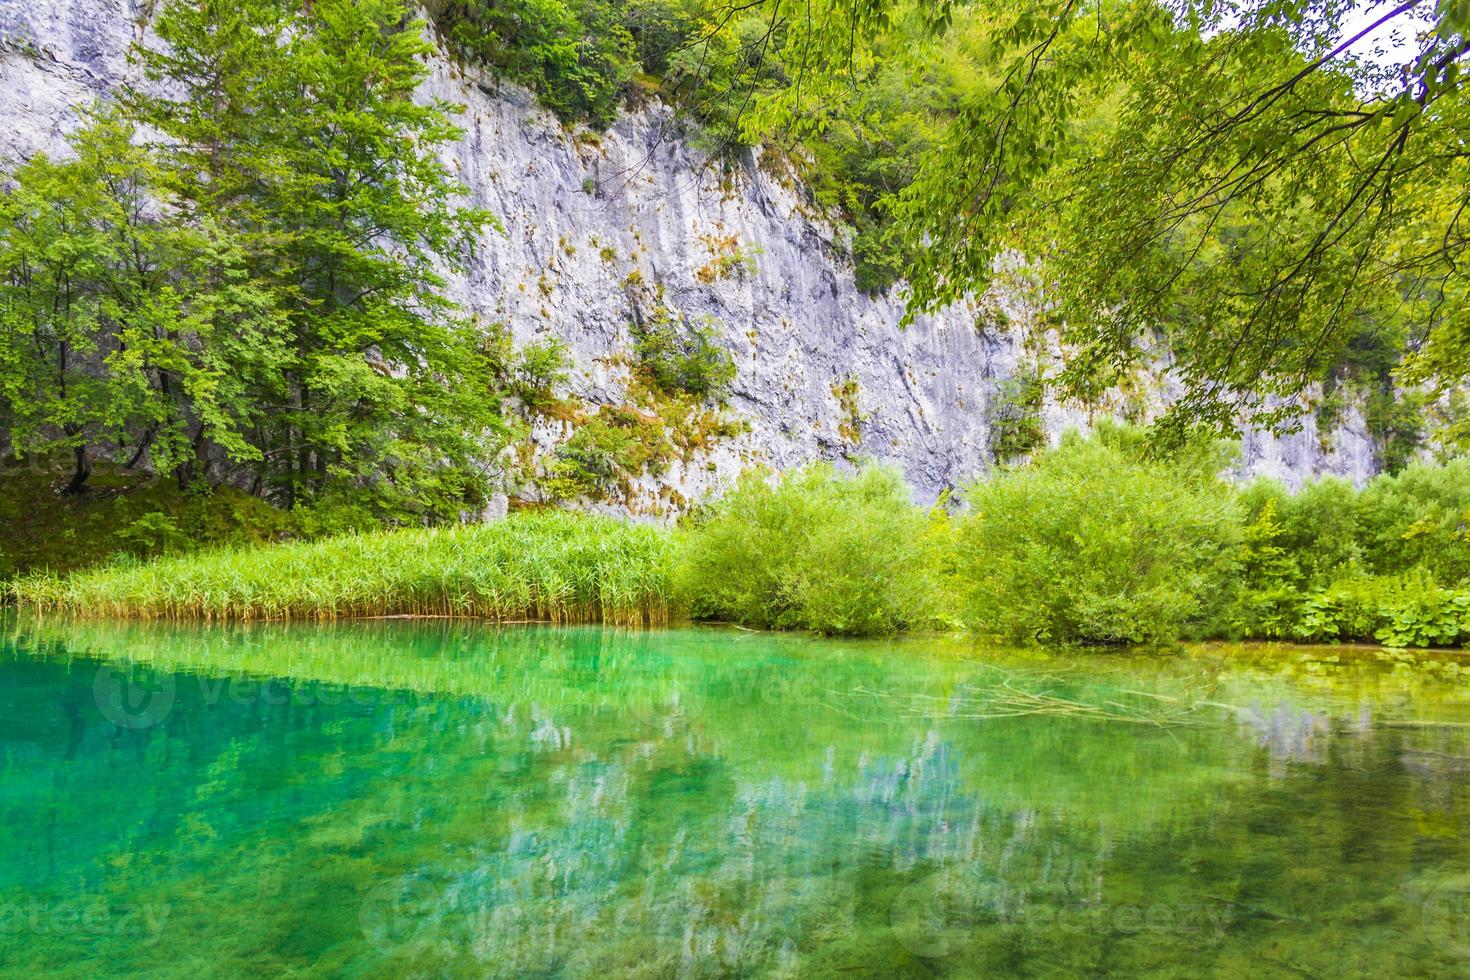 plitvice meren nationaal park landschap turquoise water in kroatië. foto